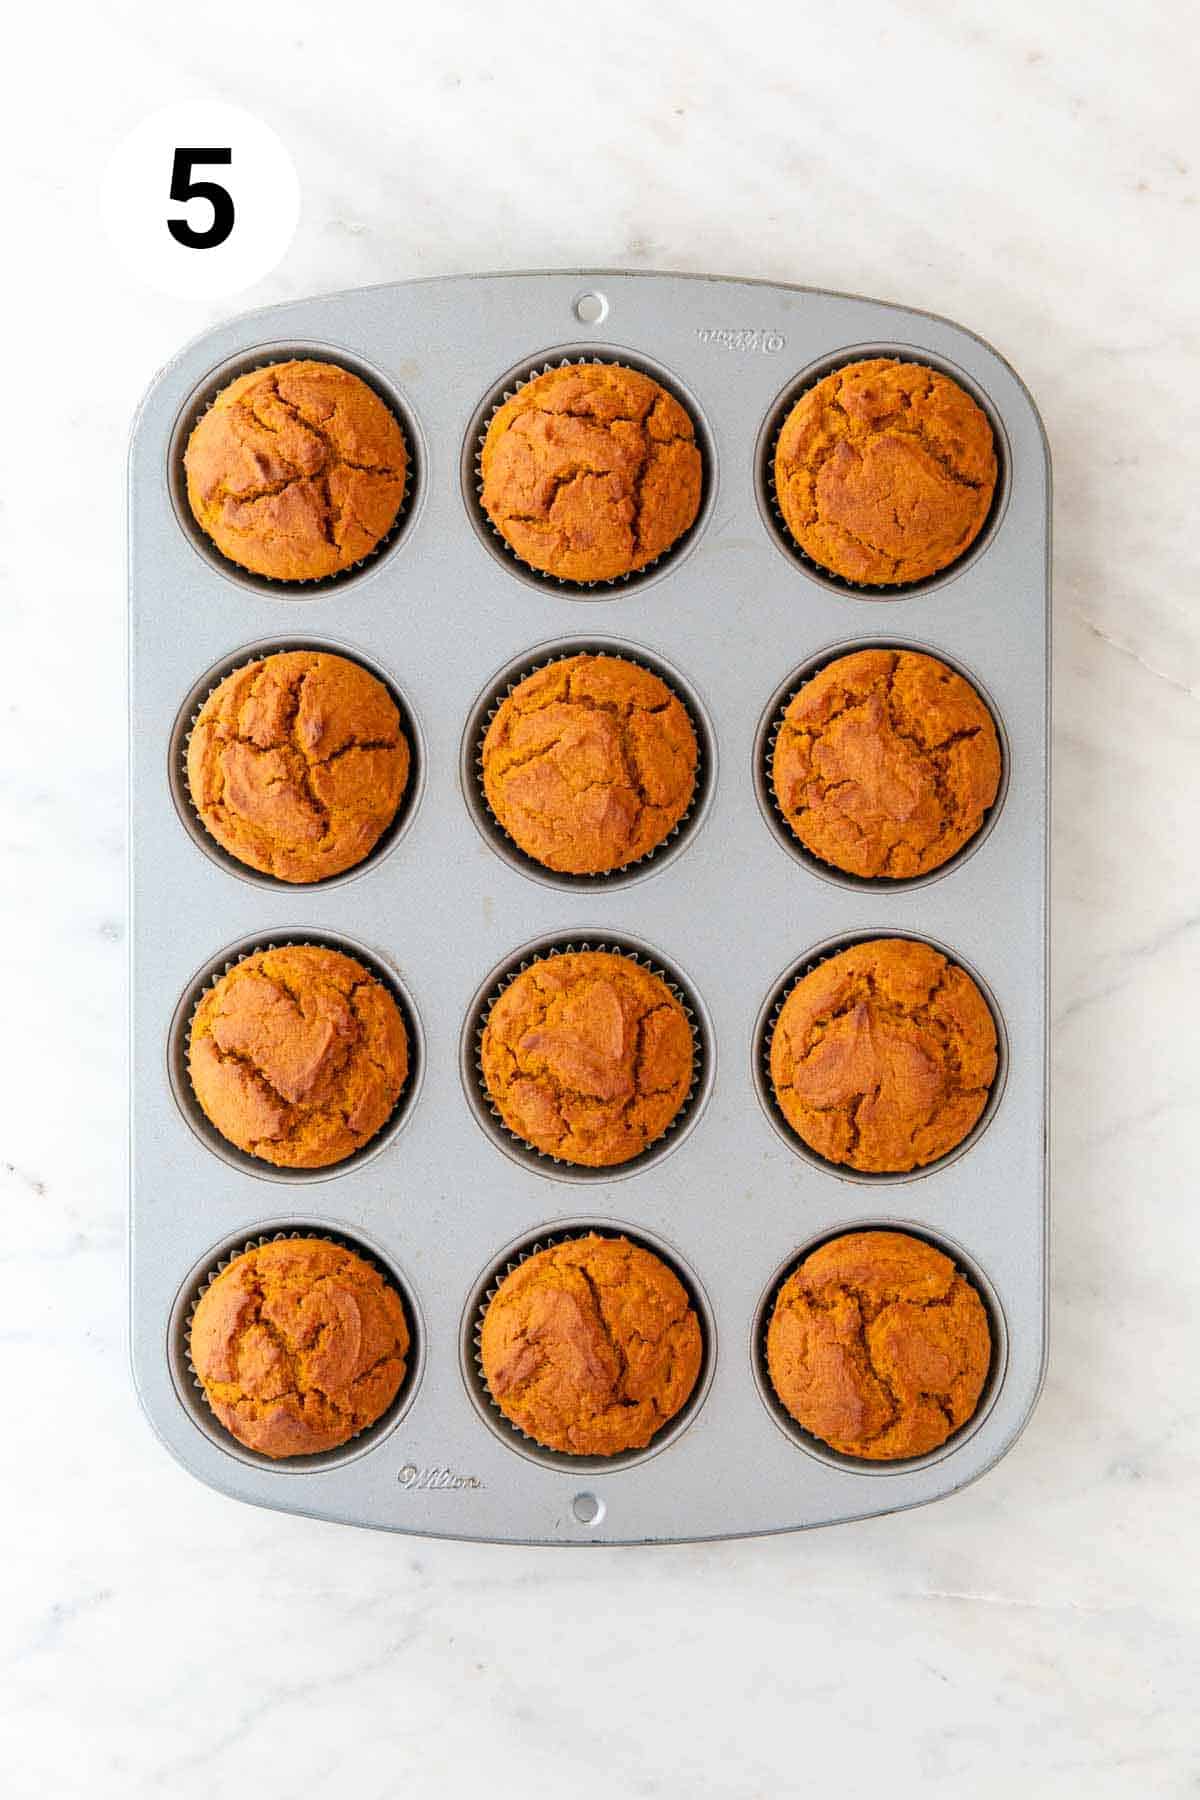 Baked vegan pumpkin muffins in a muffin pan.